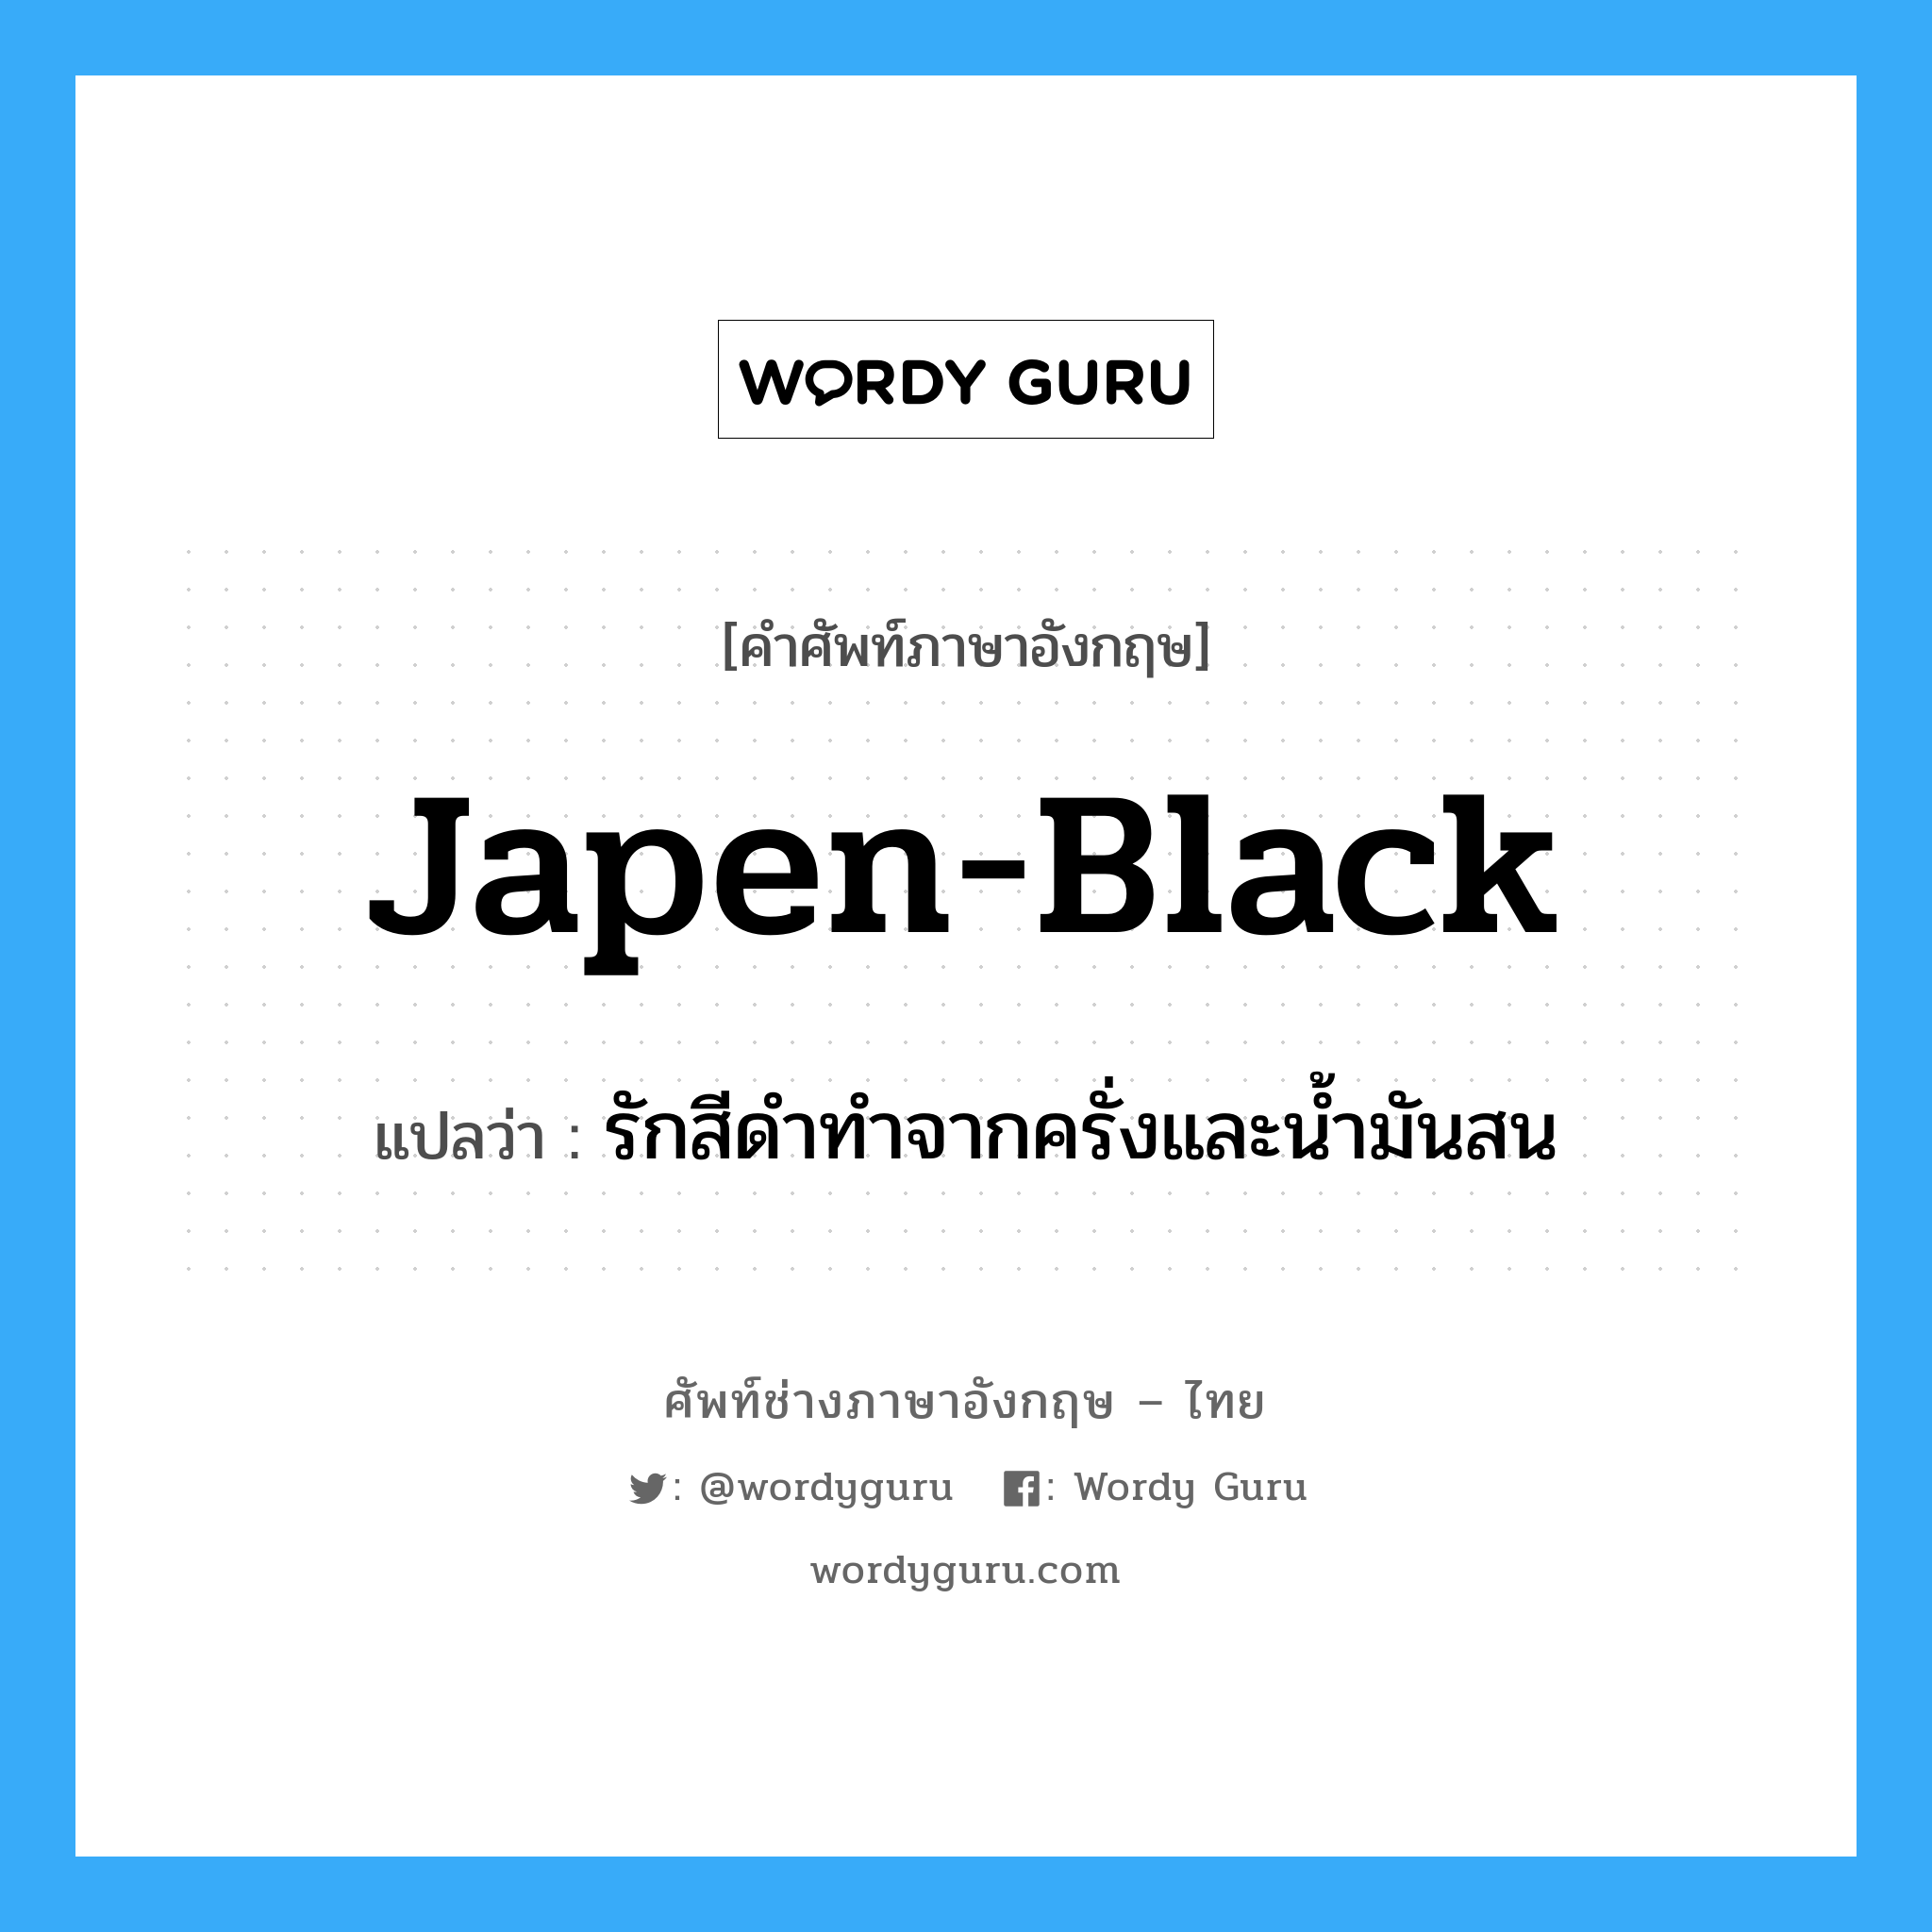 japen-black แปลว่า?, คำศัพท์ช่างภาษาอังกฤษ - ไทย japen-black คำศัพท์ภาษาอังกฤษ japen-black แปลว่า รักสีดำทำจากครั่งและน้ำมันสน